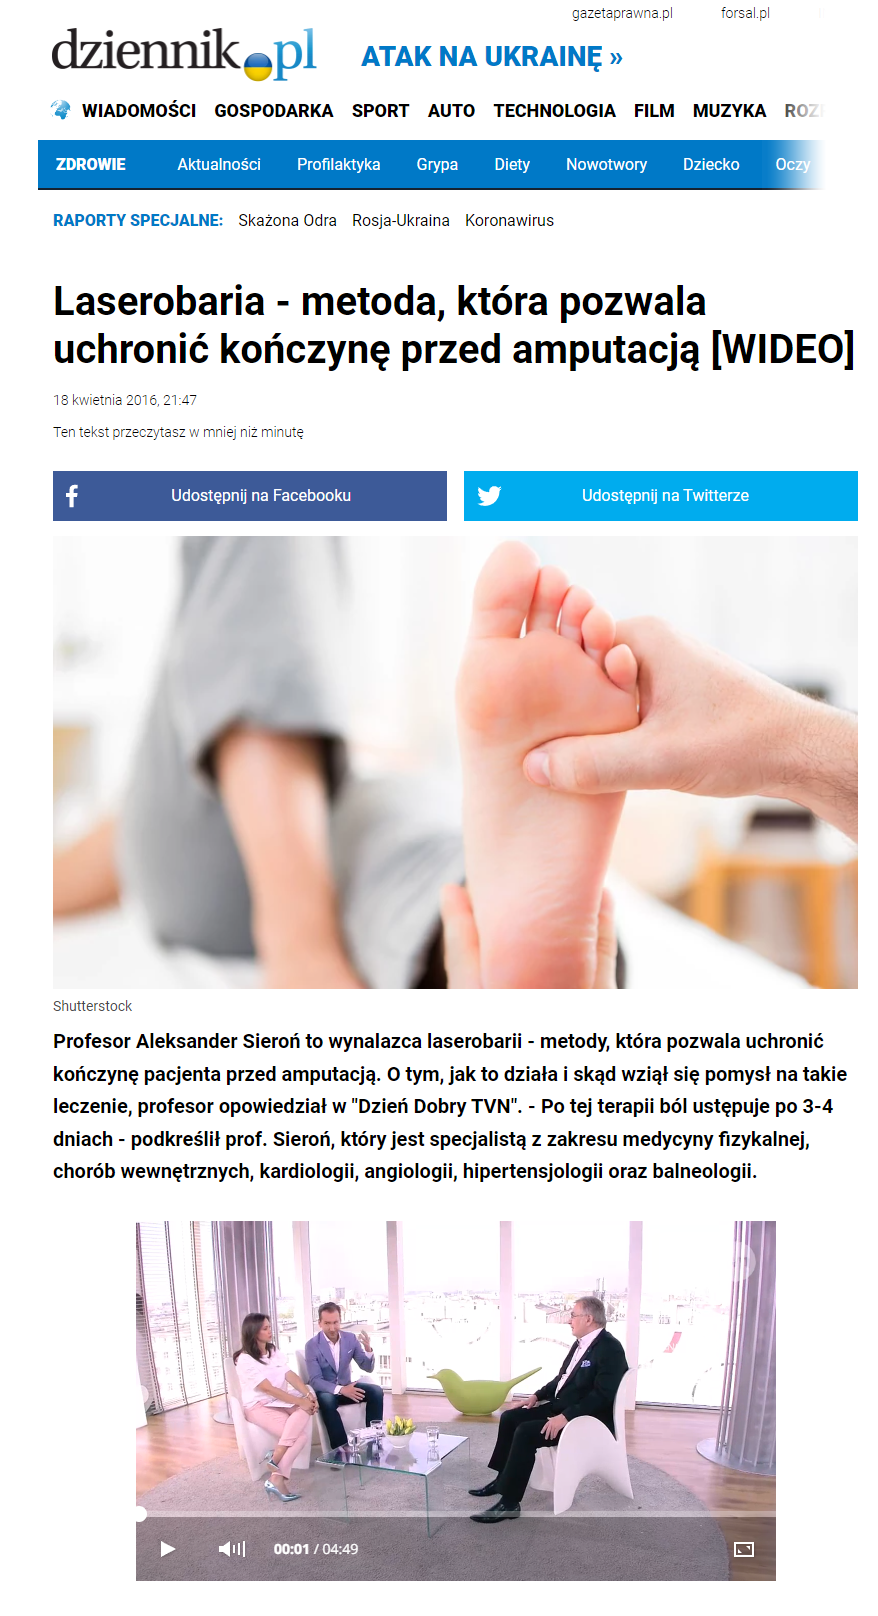 Artykuł z dziennik.pl - Laserobaria metoda która pozwala uchronić kończynę przed amputacją